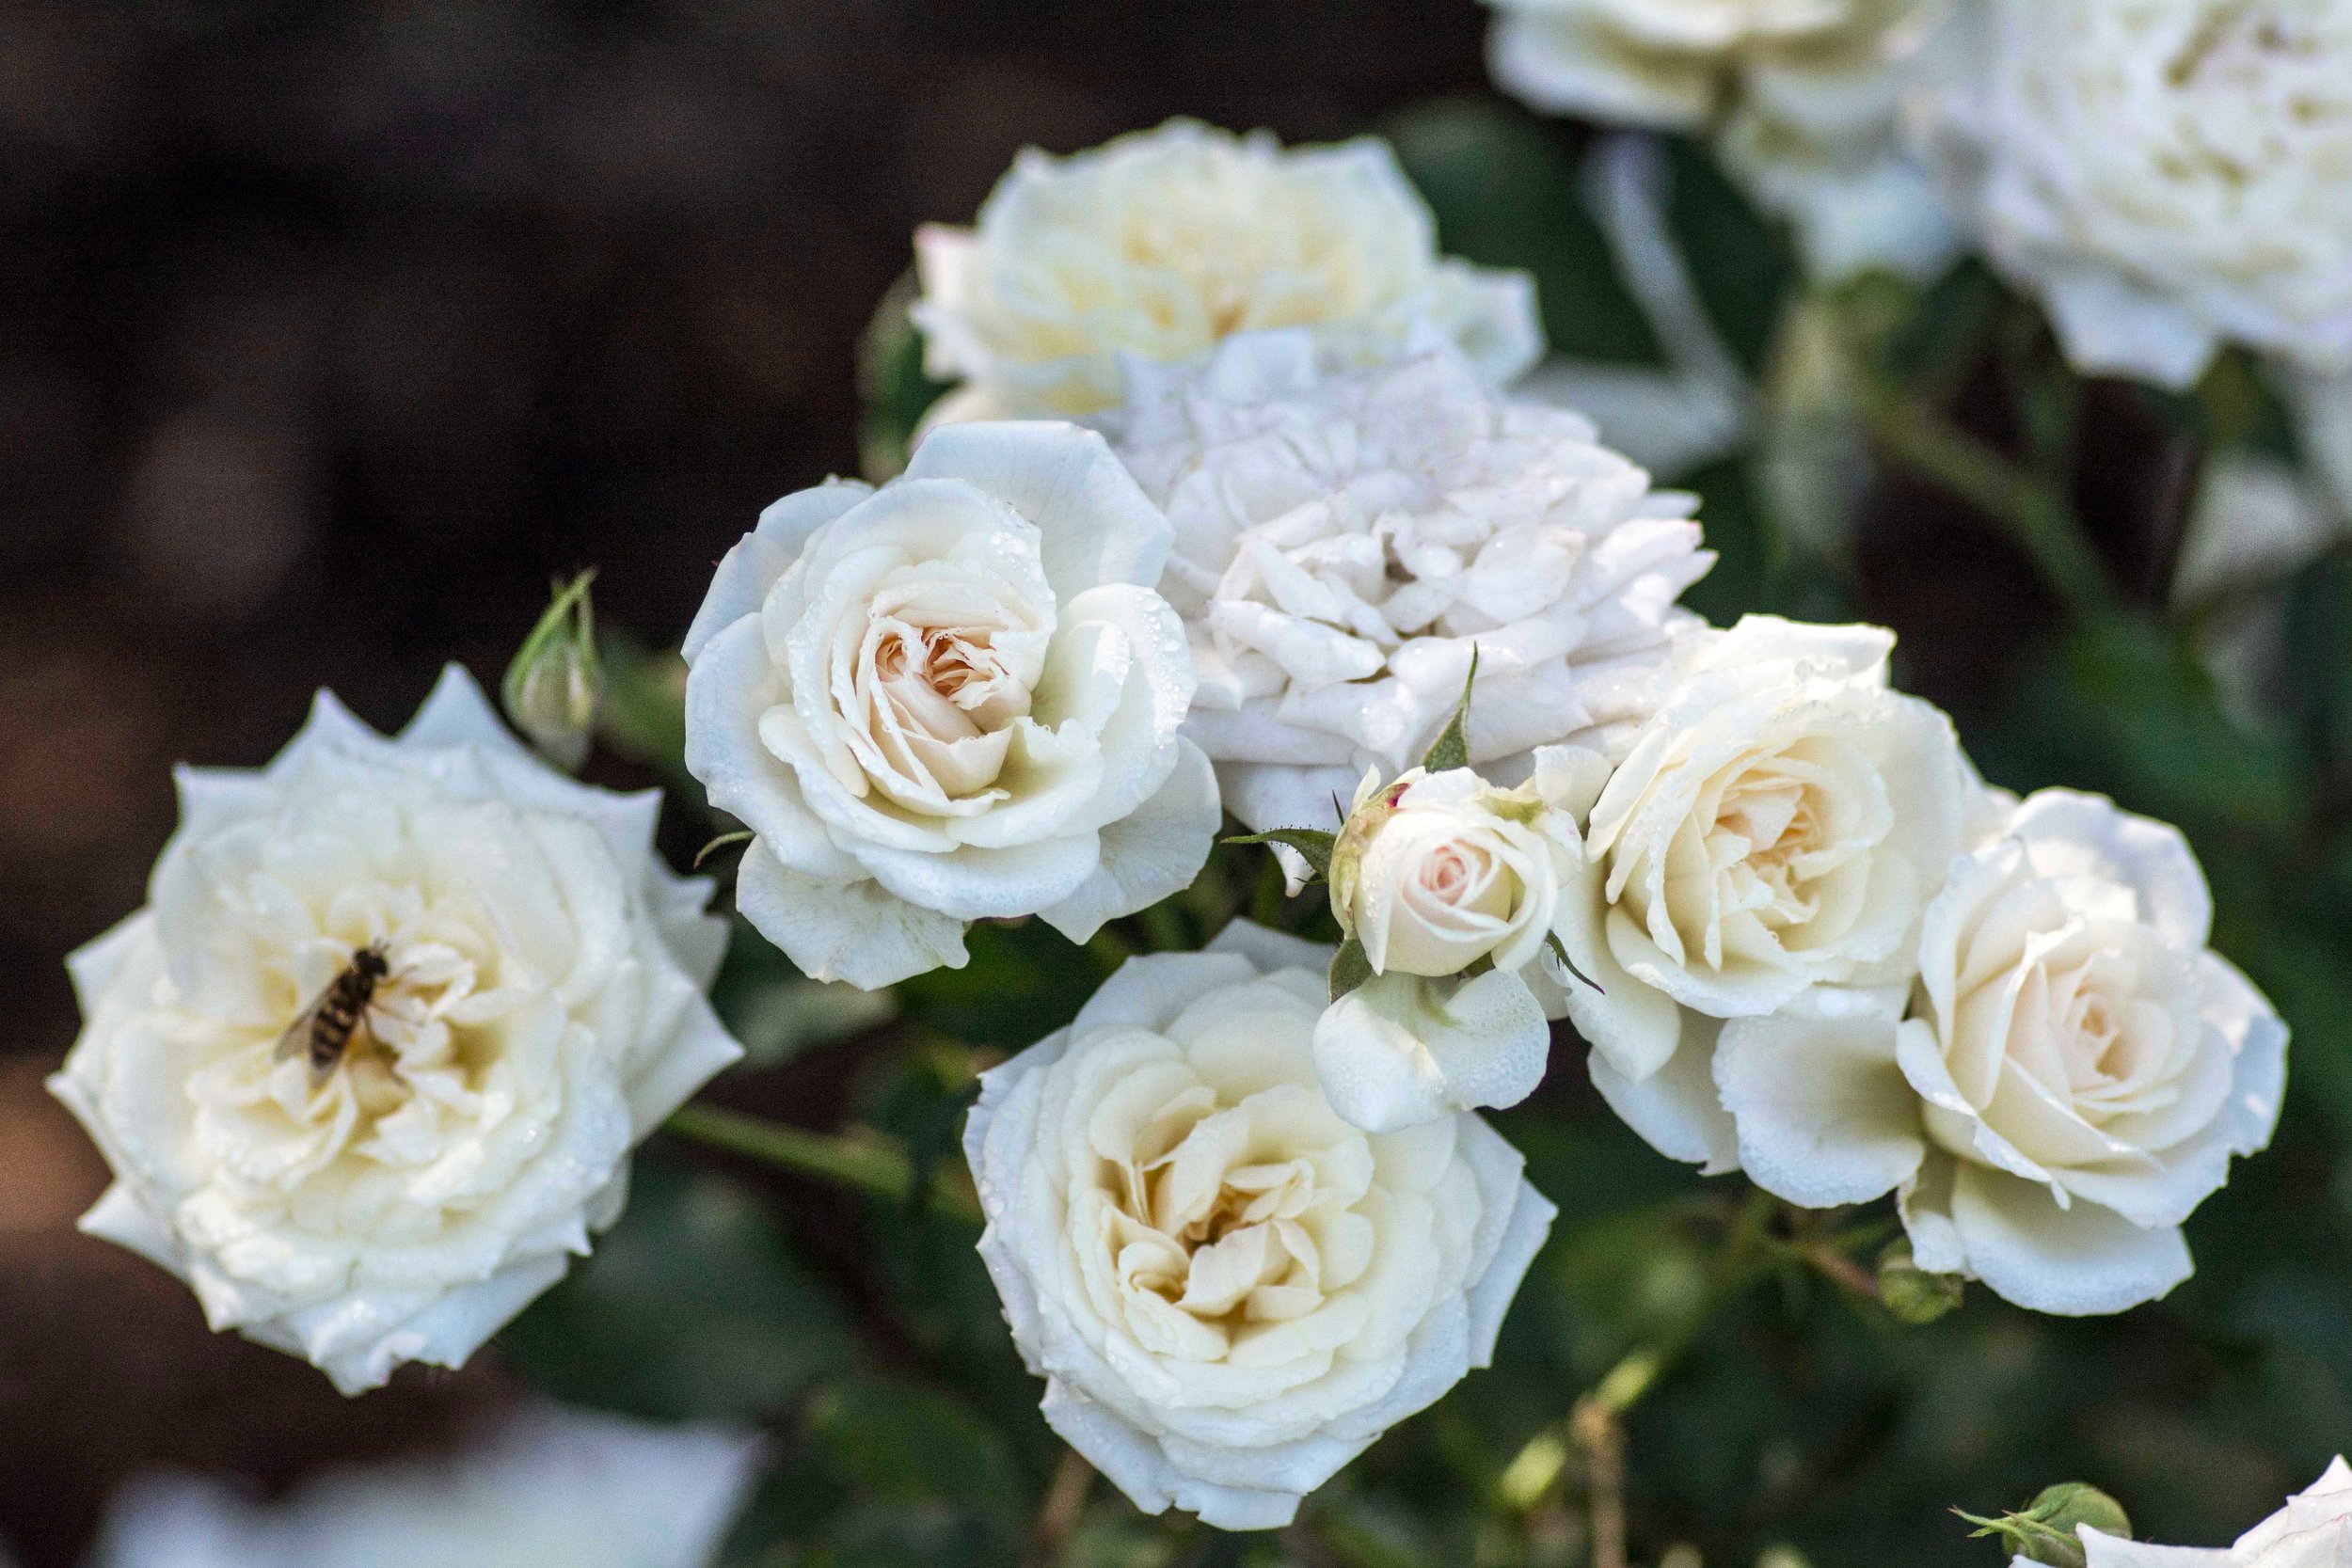 white drift® — drift® roses